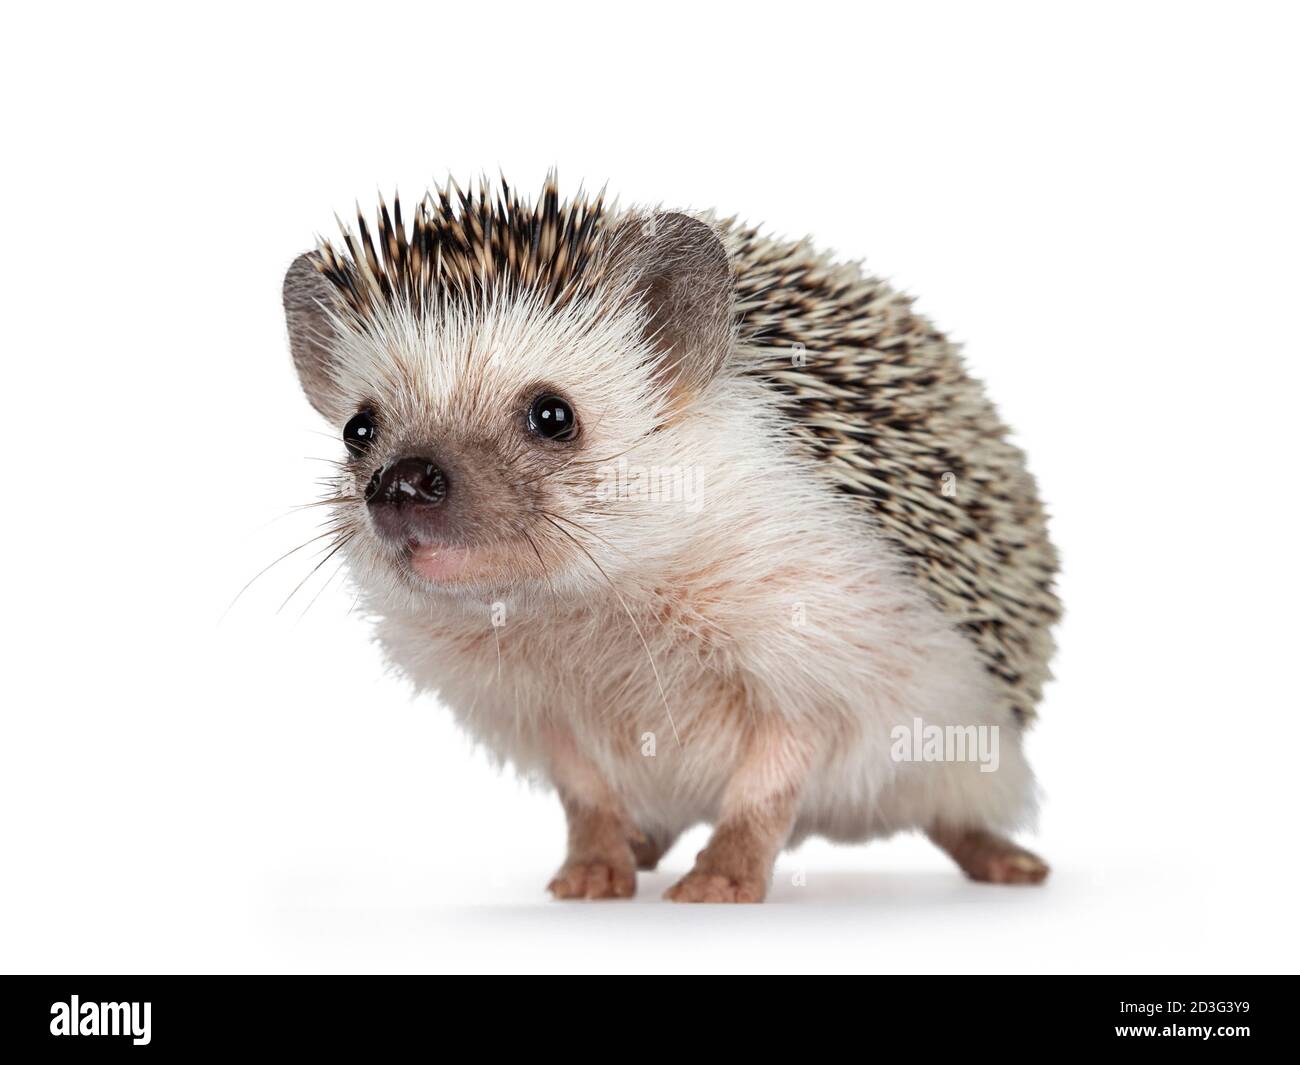 Carino adulto africano pygme hedgehog, in piedi di fronte. Guardando direttamente alla fotocamera. Isolato su sfondo bianco. Foto Stock